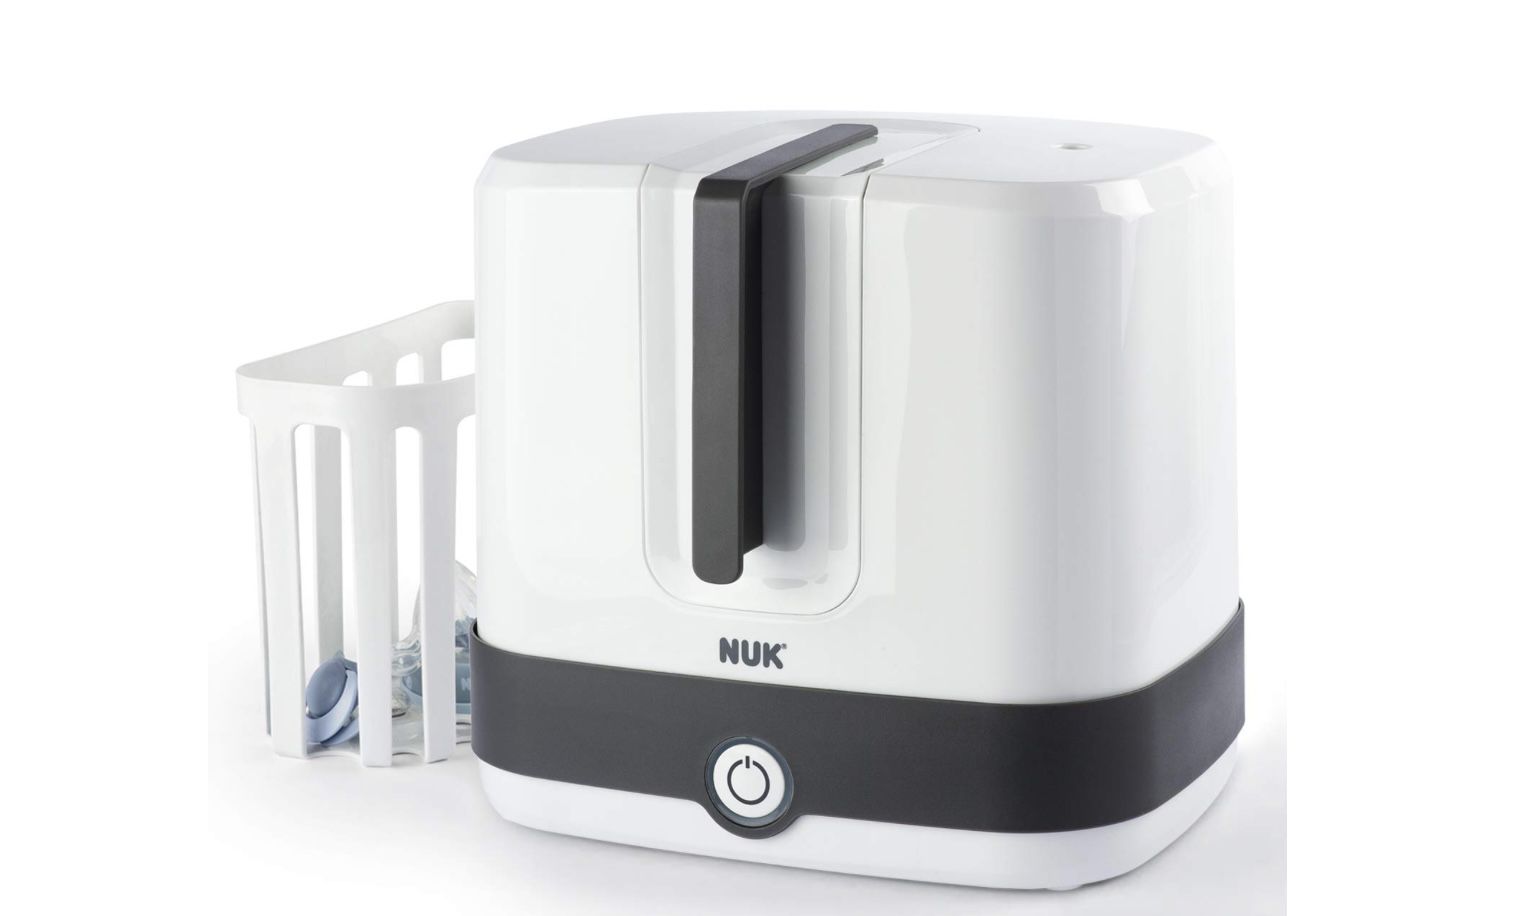 NUK Vario Express Dampf Sterilisator für 6 Babyflaschen für 44€ (statt 61€)